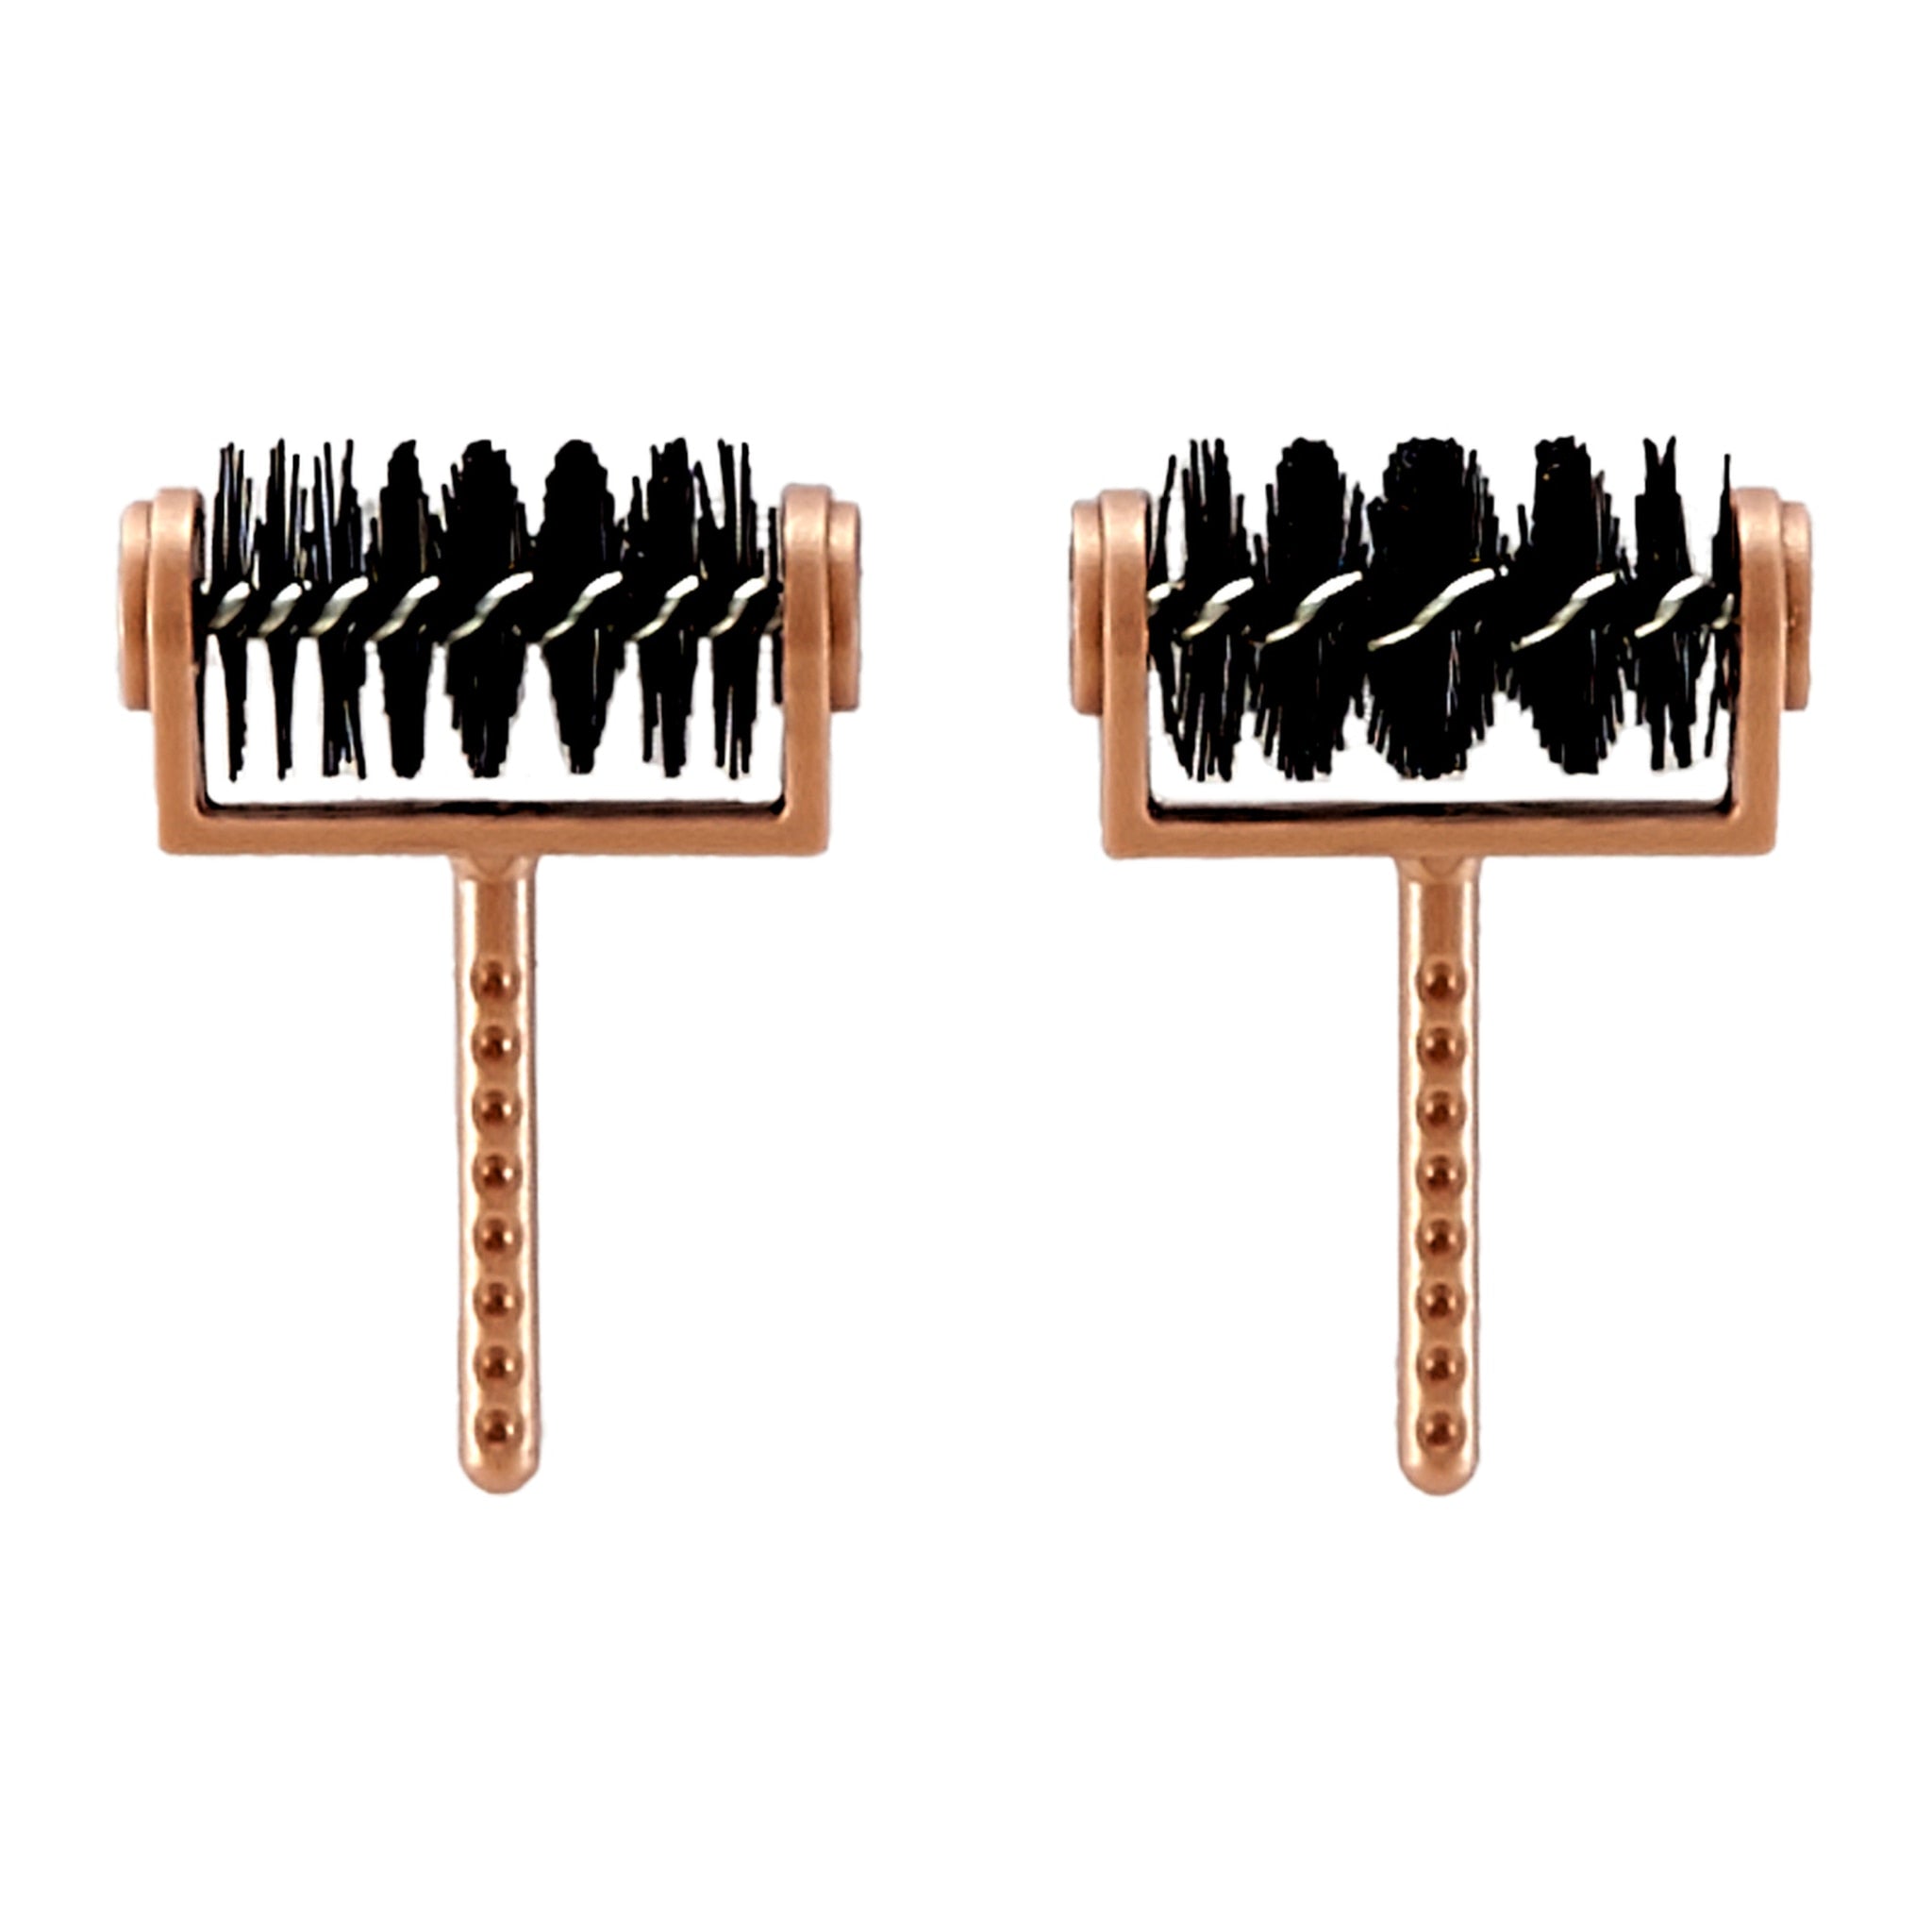 Spellbinders Tool 'n' One  Replacement  Brush tips